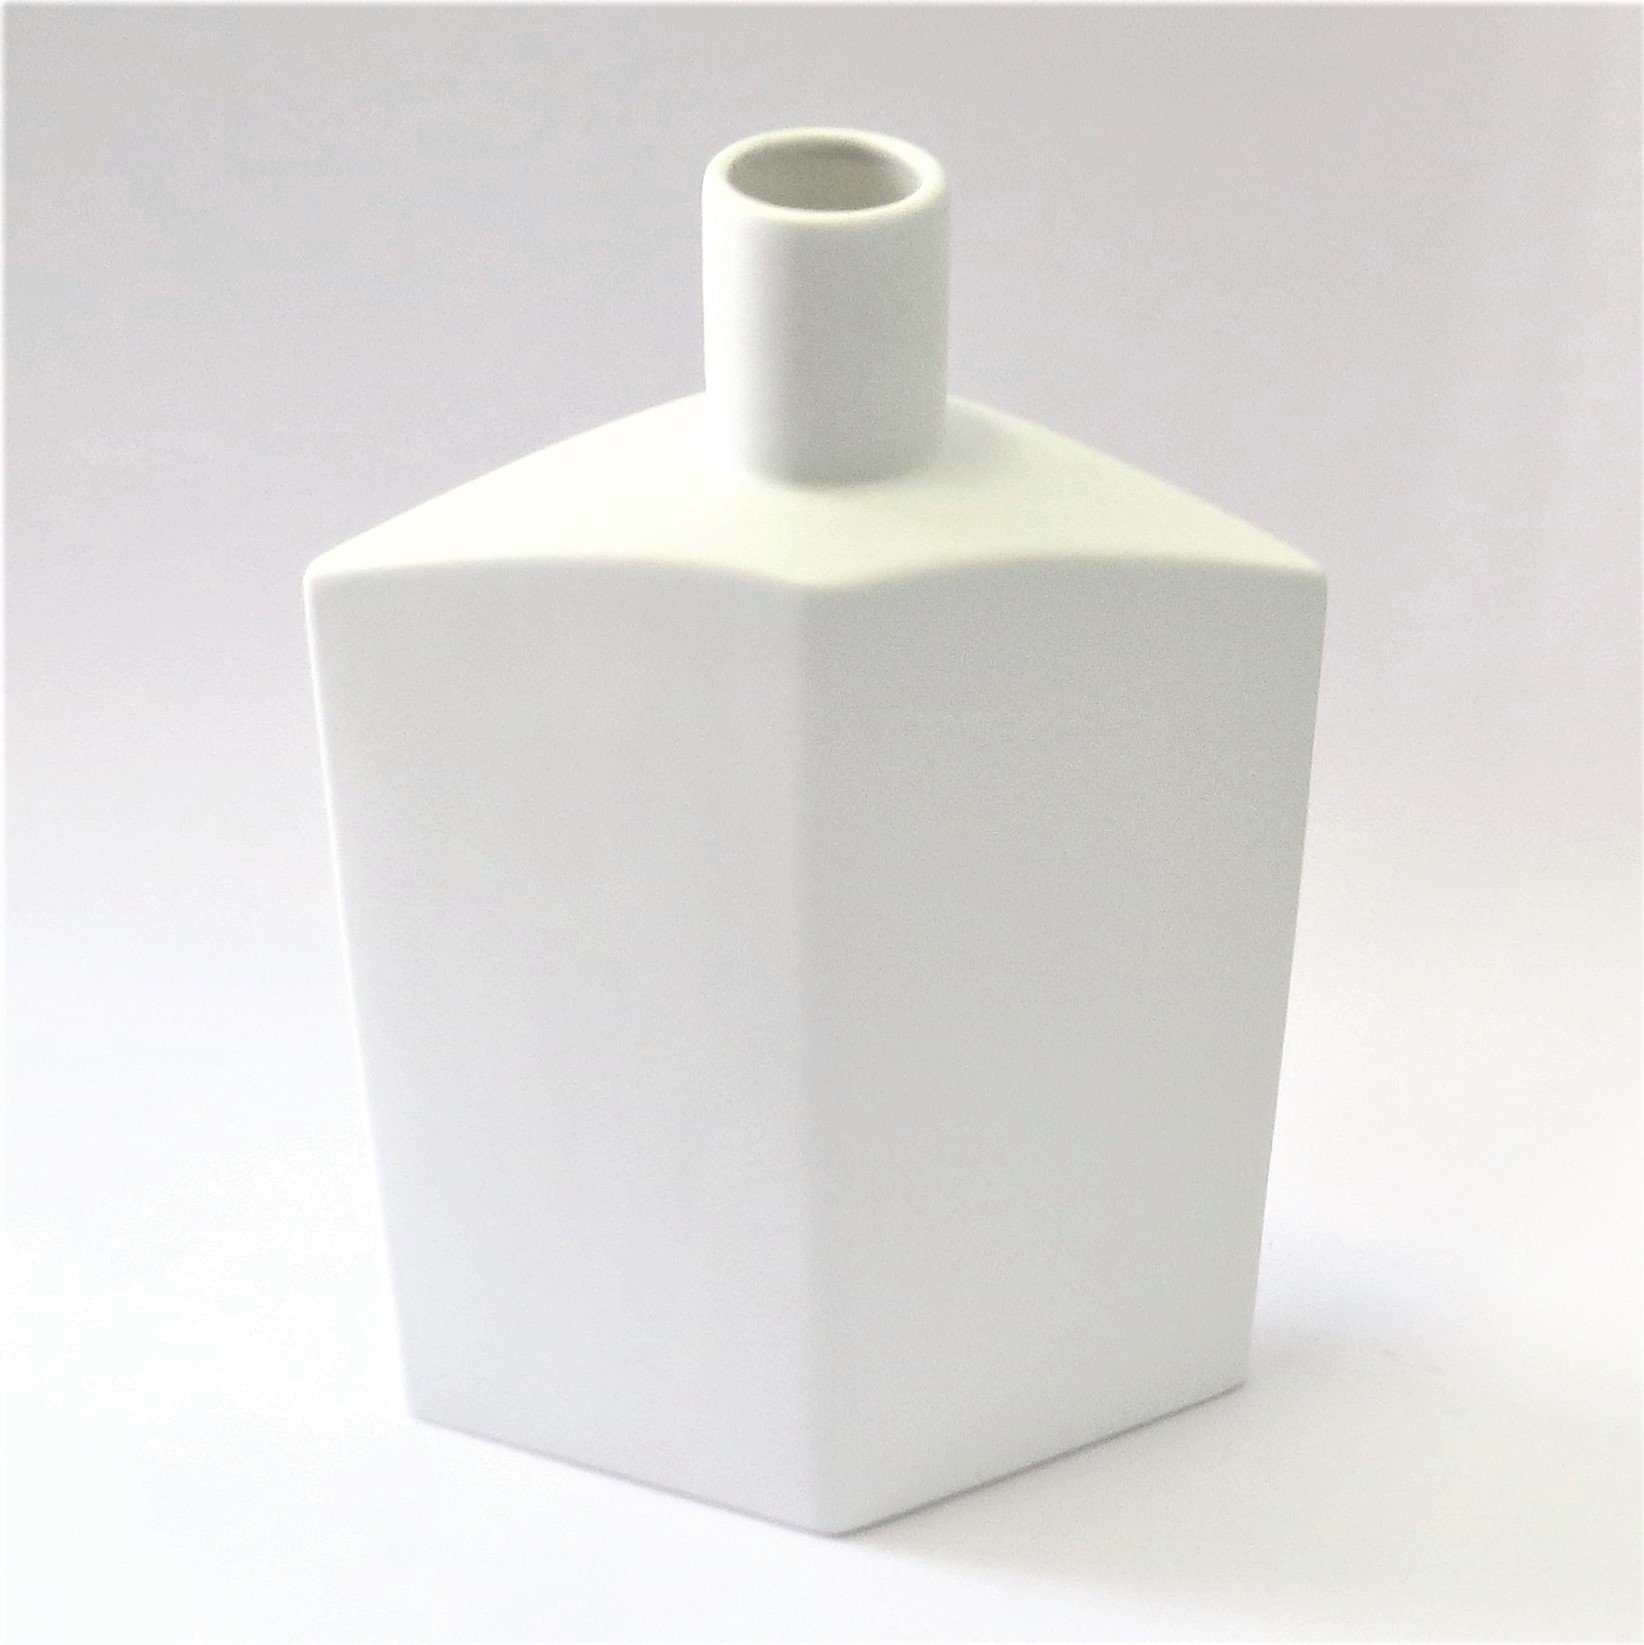 Bob Home Tischvase Vase Weiß Keramik Modernes Design Bob 43 cm Tisch Deko Asymmetrisch, Asymmetrisch